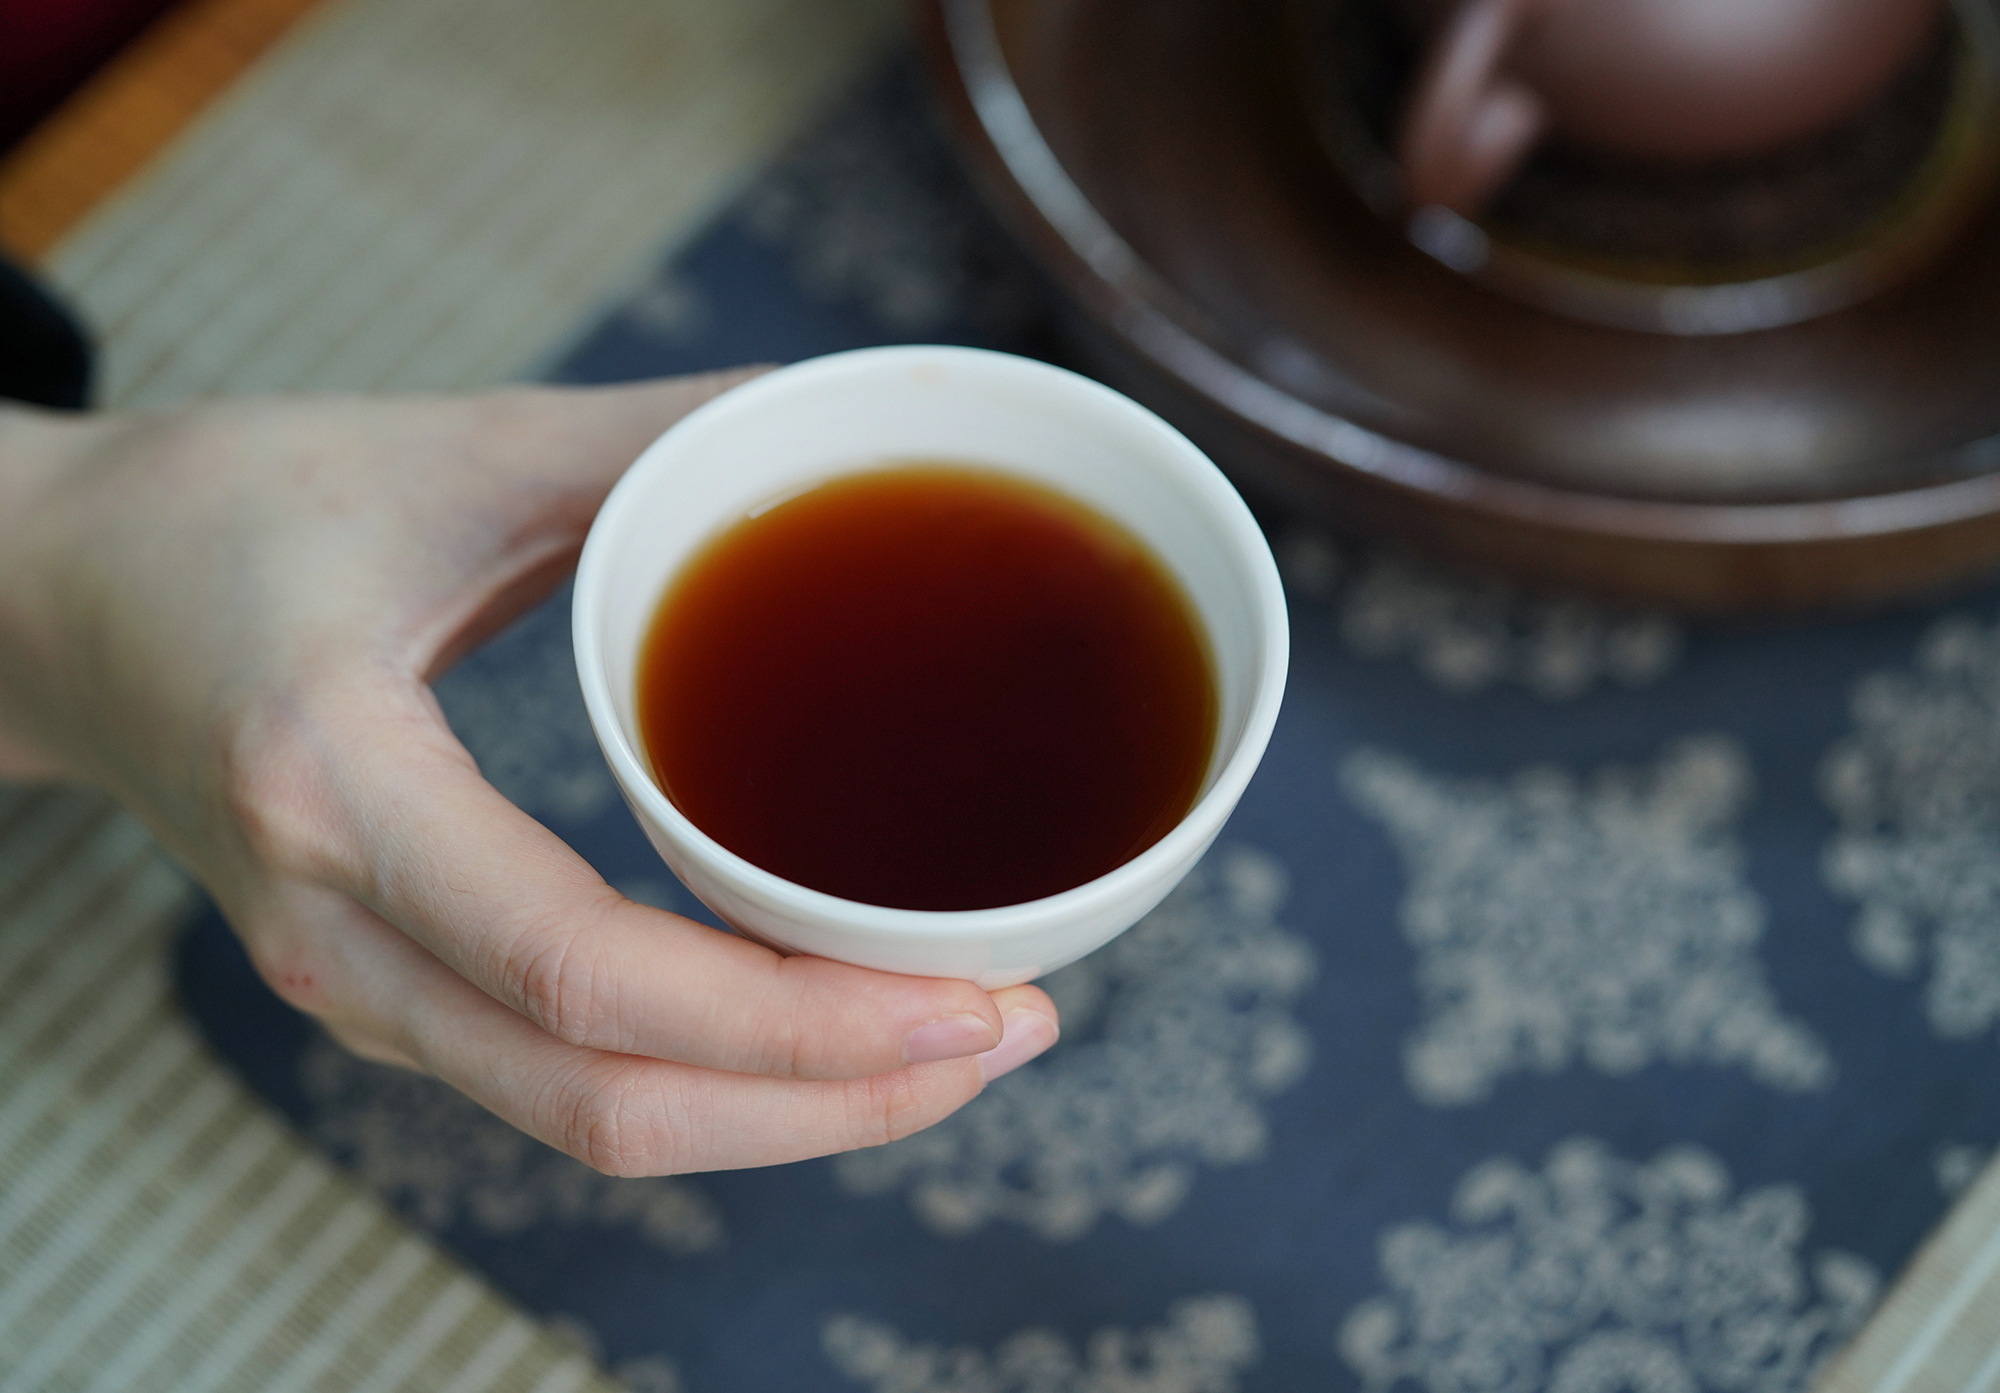 小喜年-普洱茶原料的“天花板”，2010年的何仕华景迈“宫廷”迷你熟饼